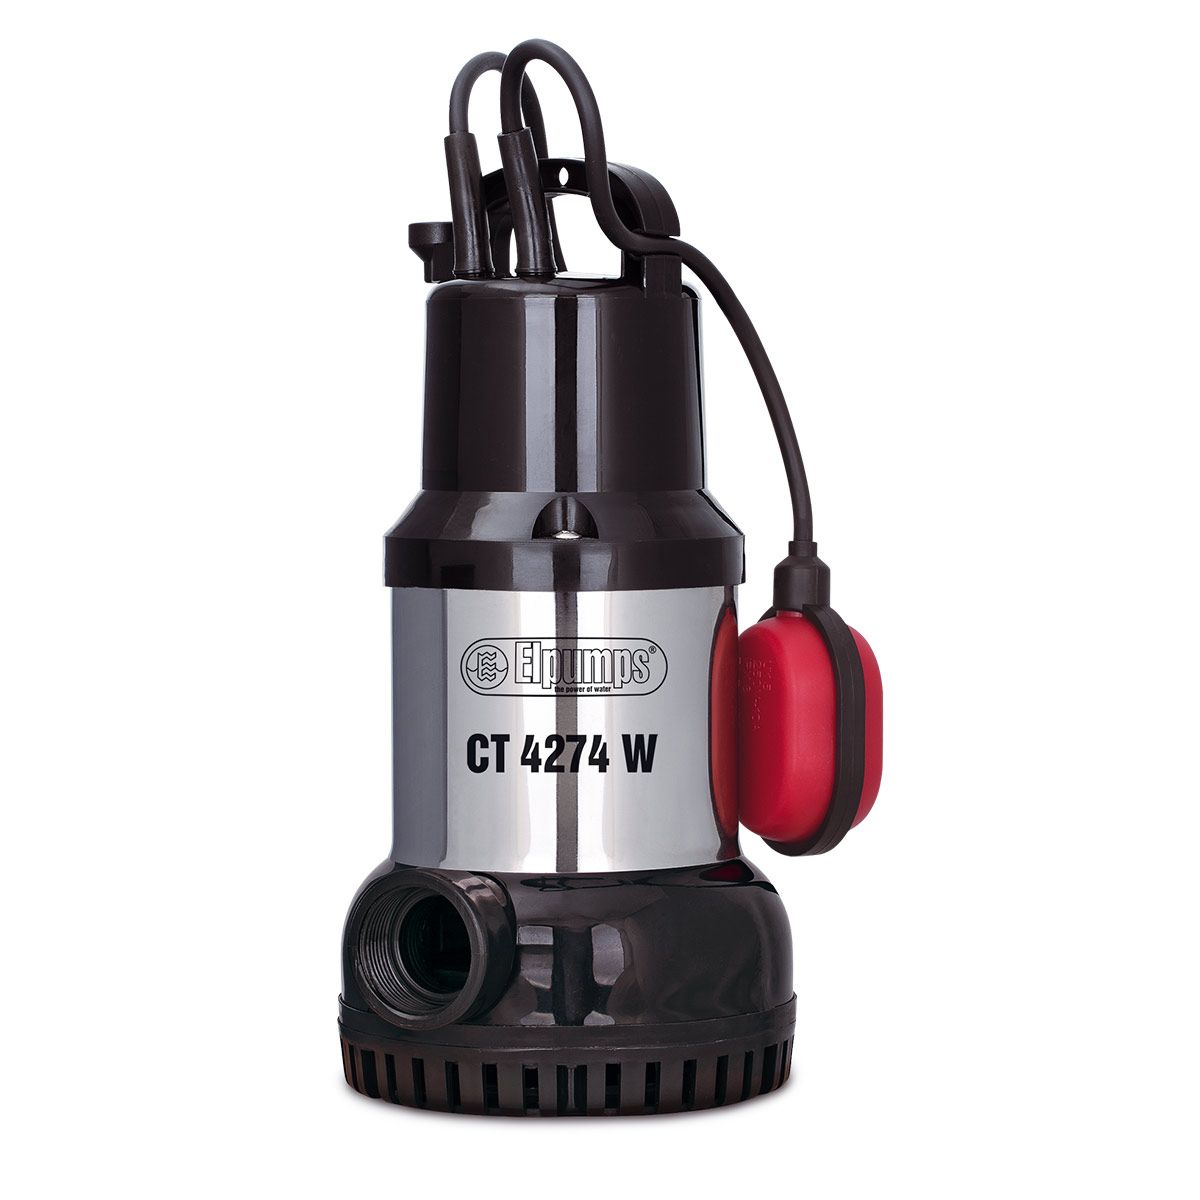 Pompe pour eaux claires CT 4274 W, H max 12.0 m, Q max 15000 l/h, 0.8 kW